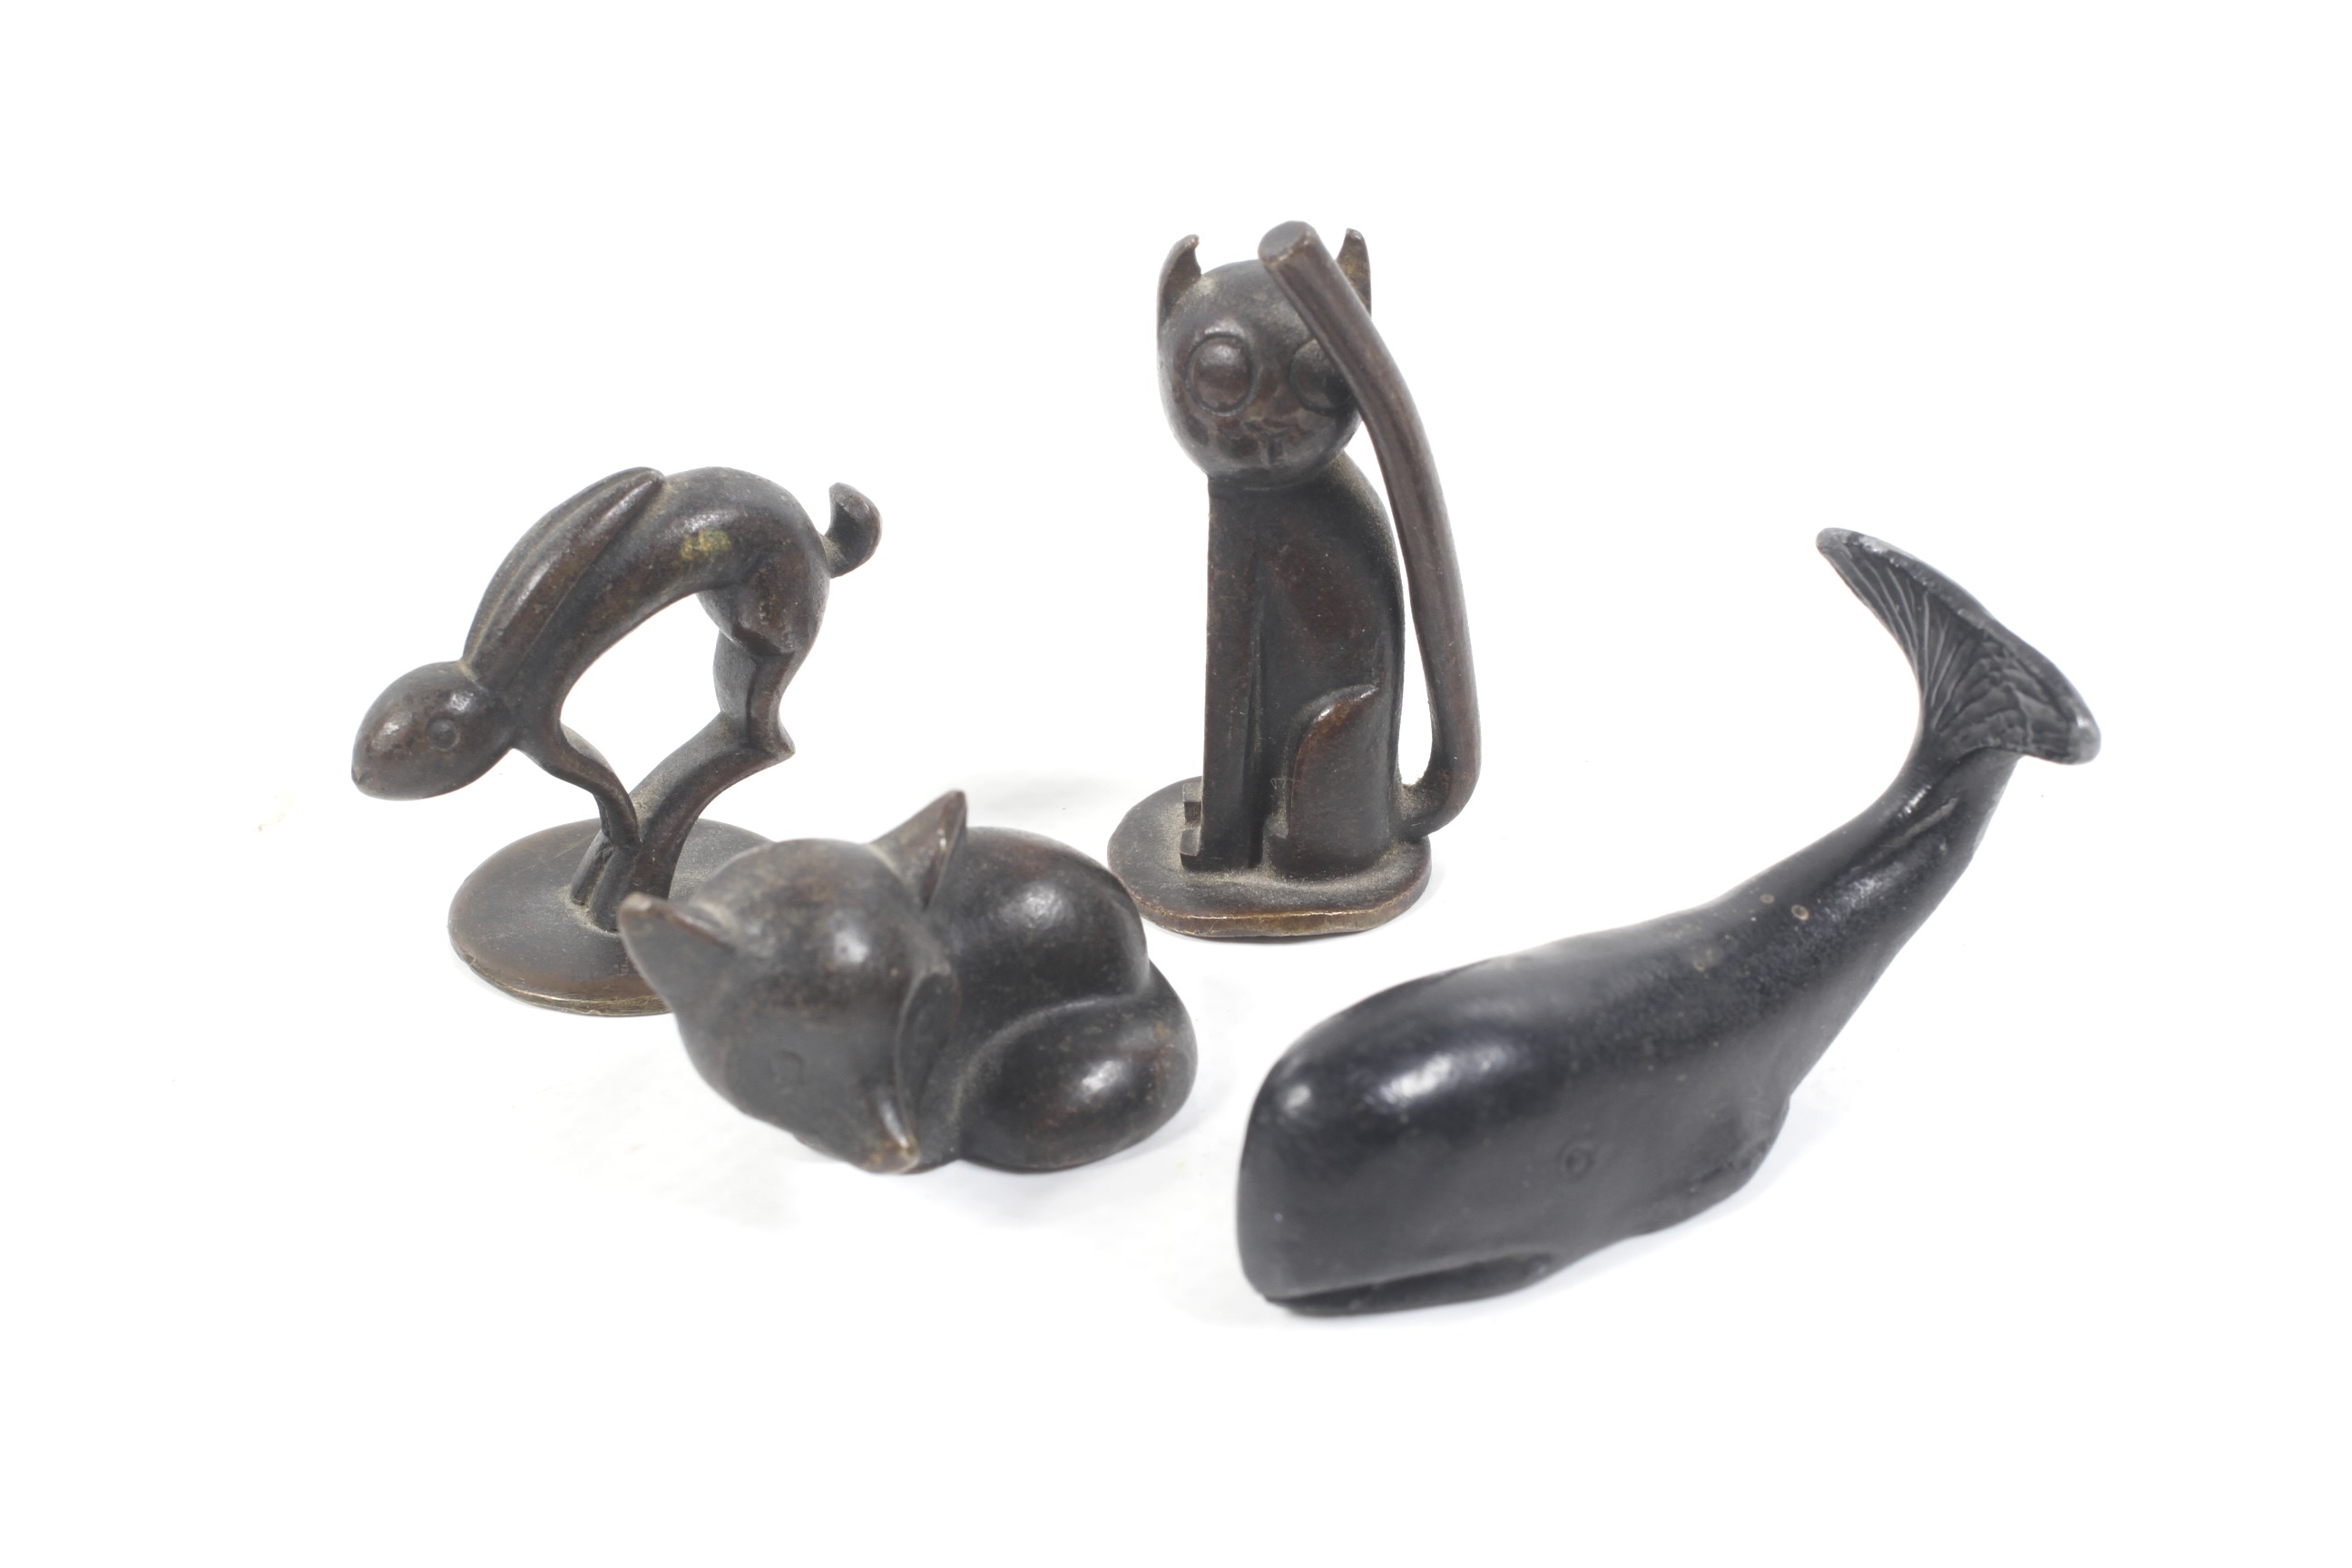 Four contemporary miniature bronze animals.